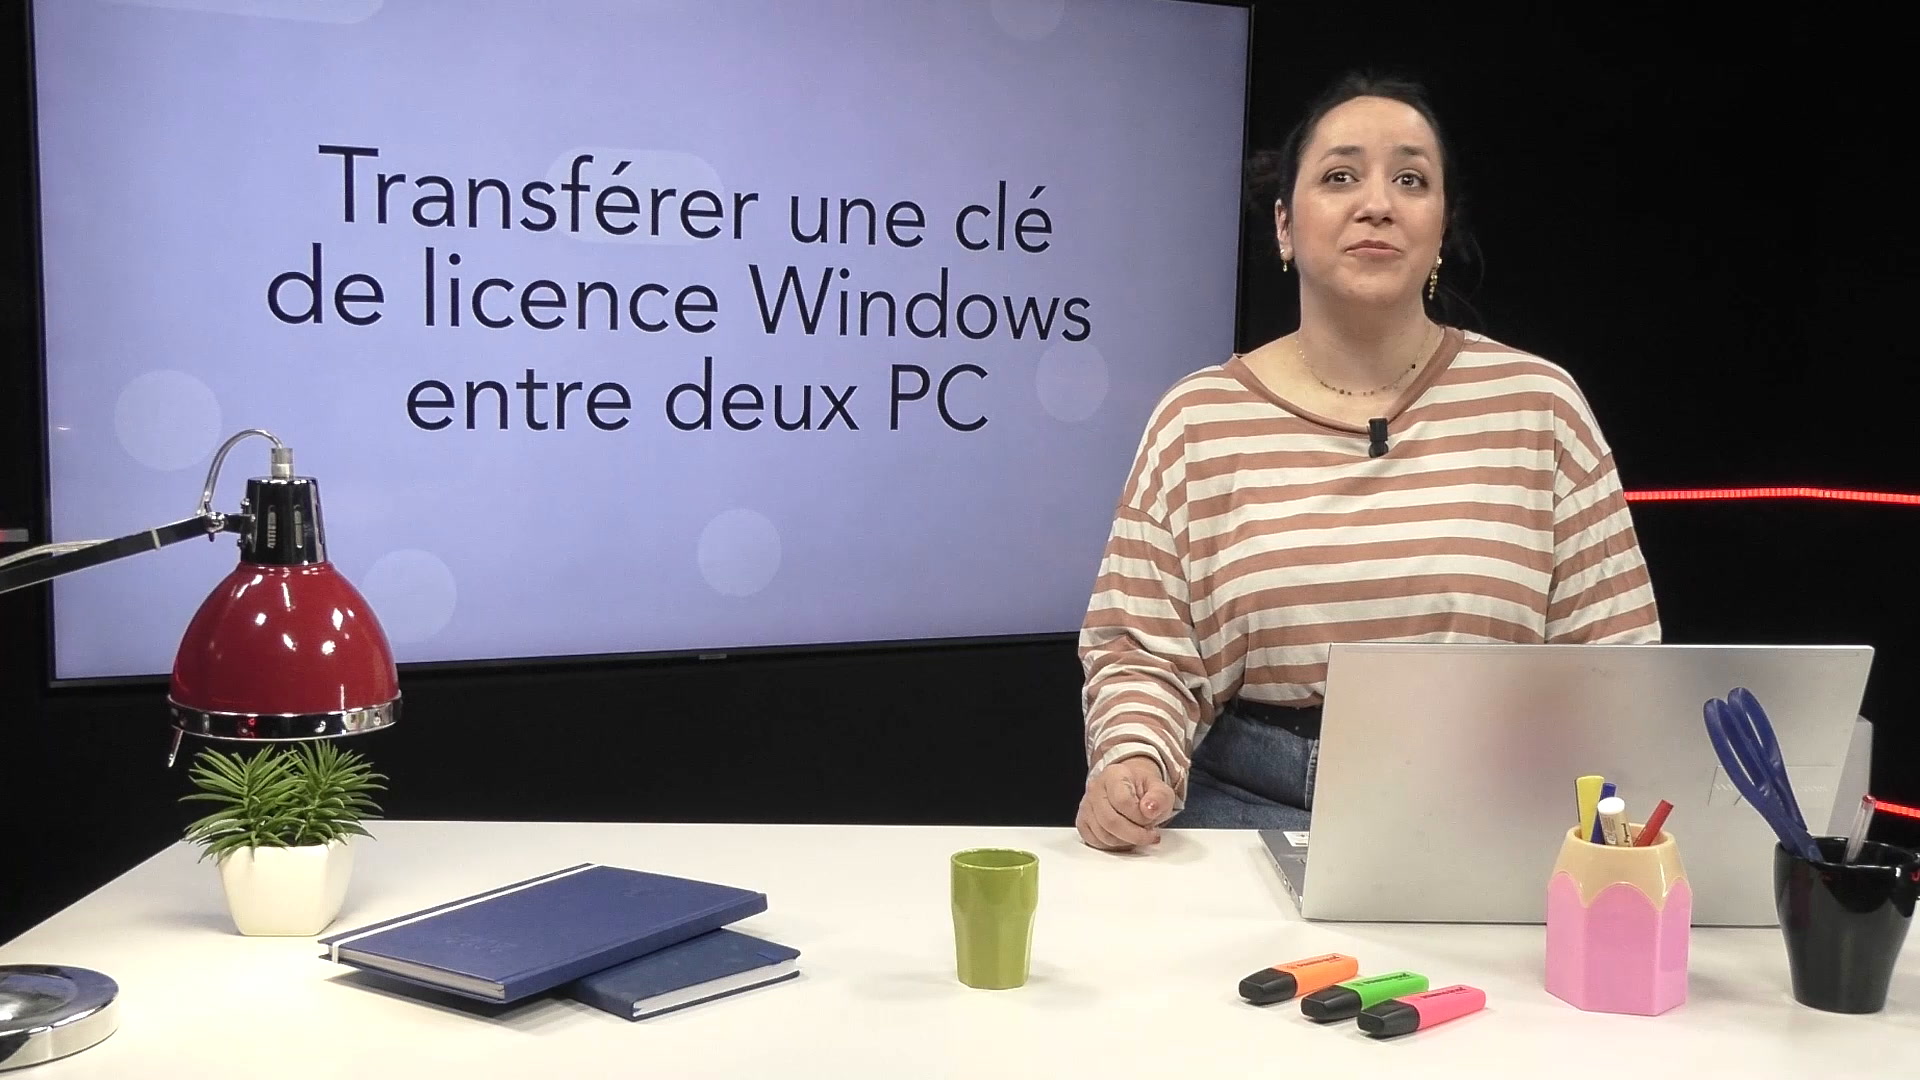 Transférer une licence numérique Windows 10 - La Petite Ourse